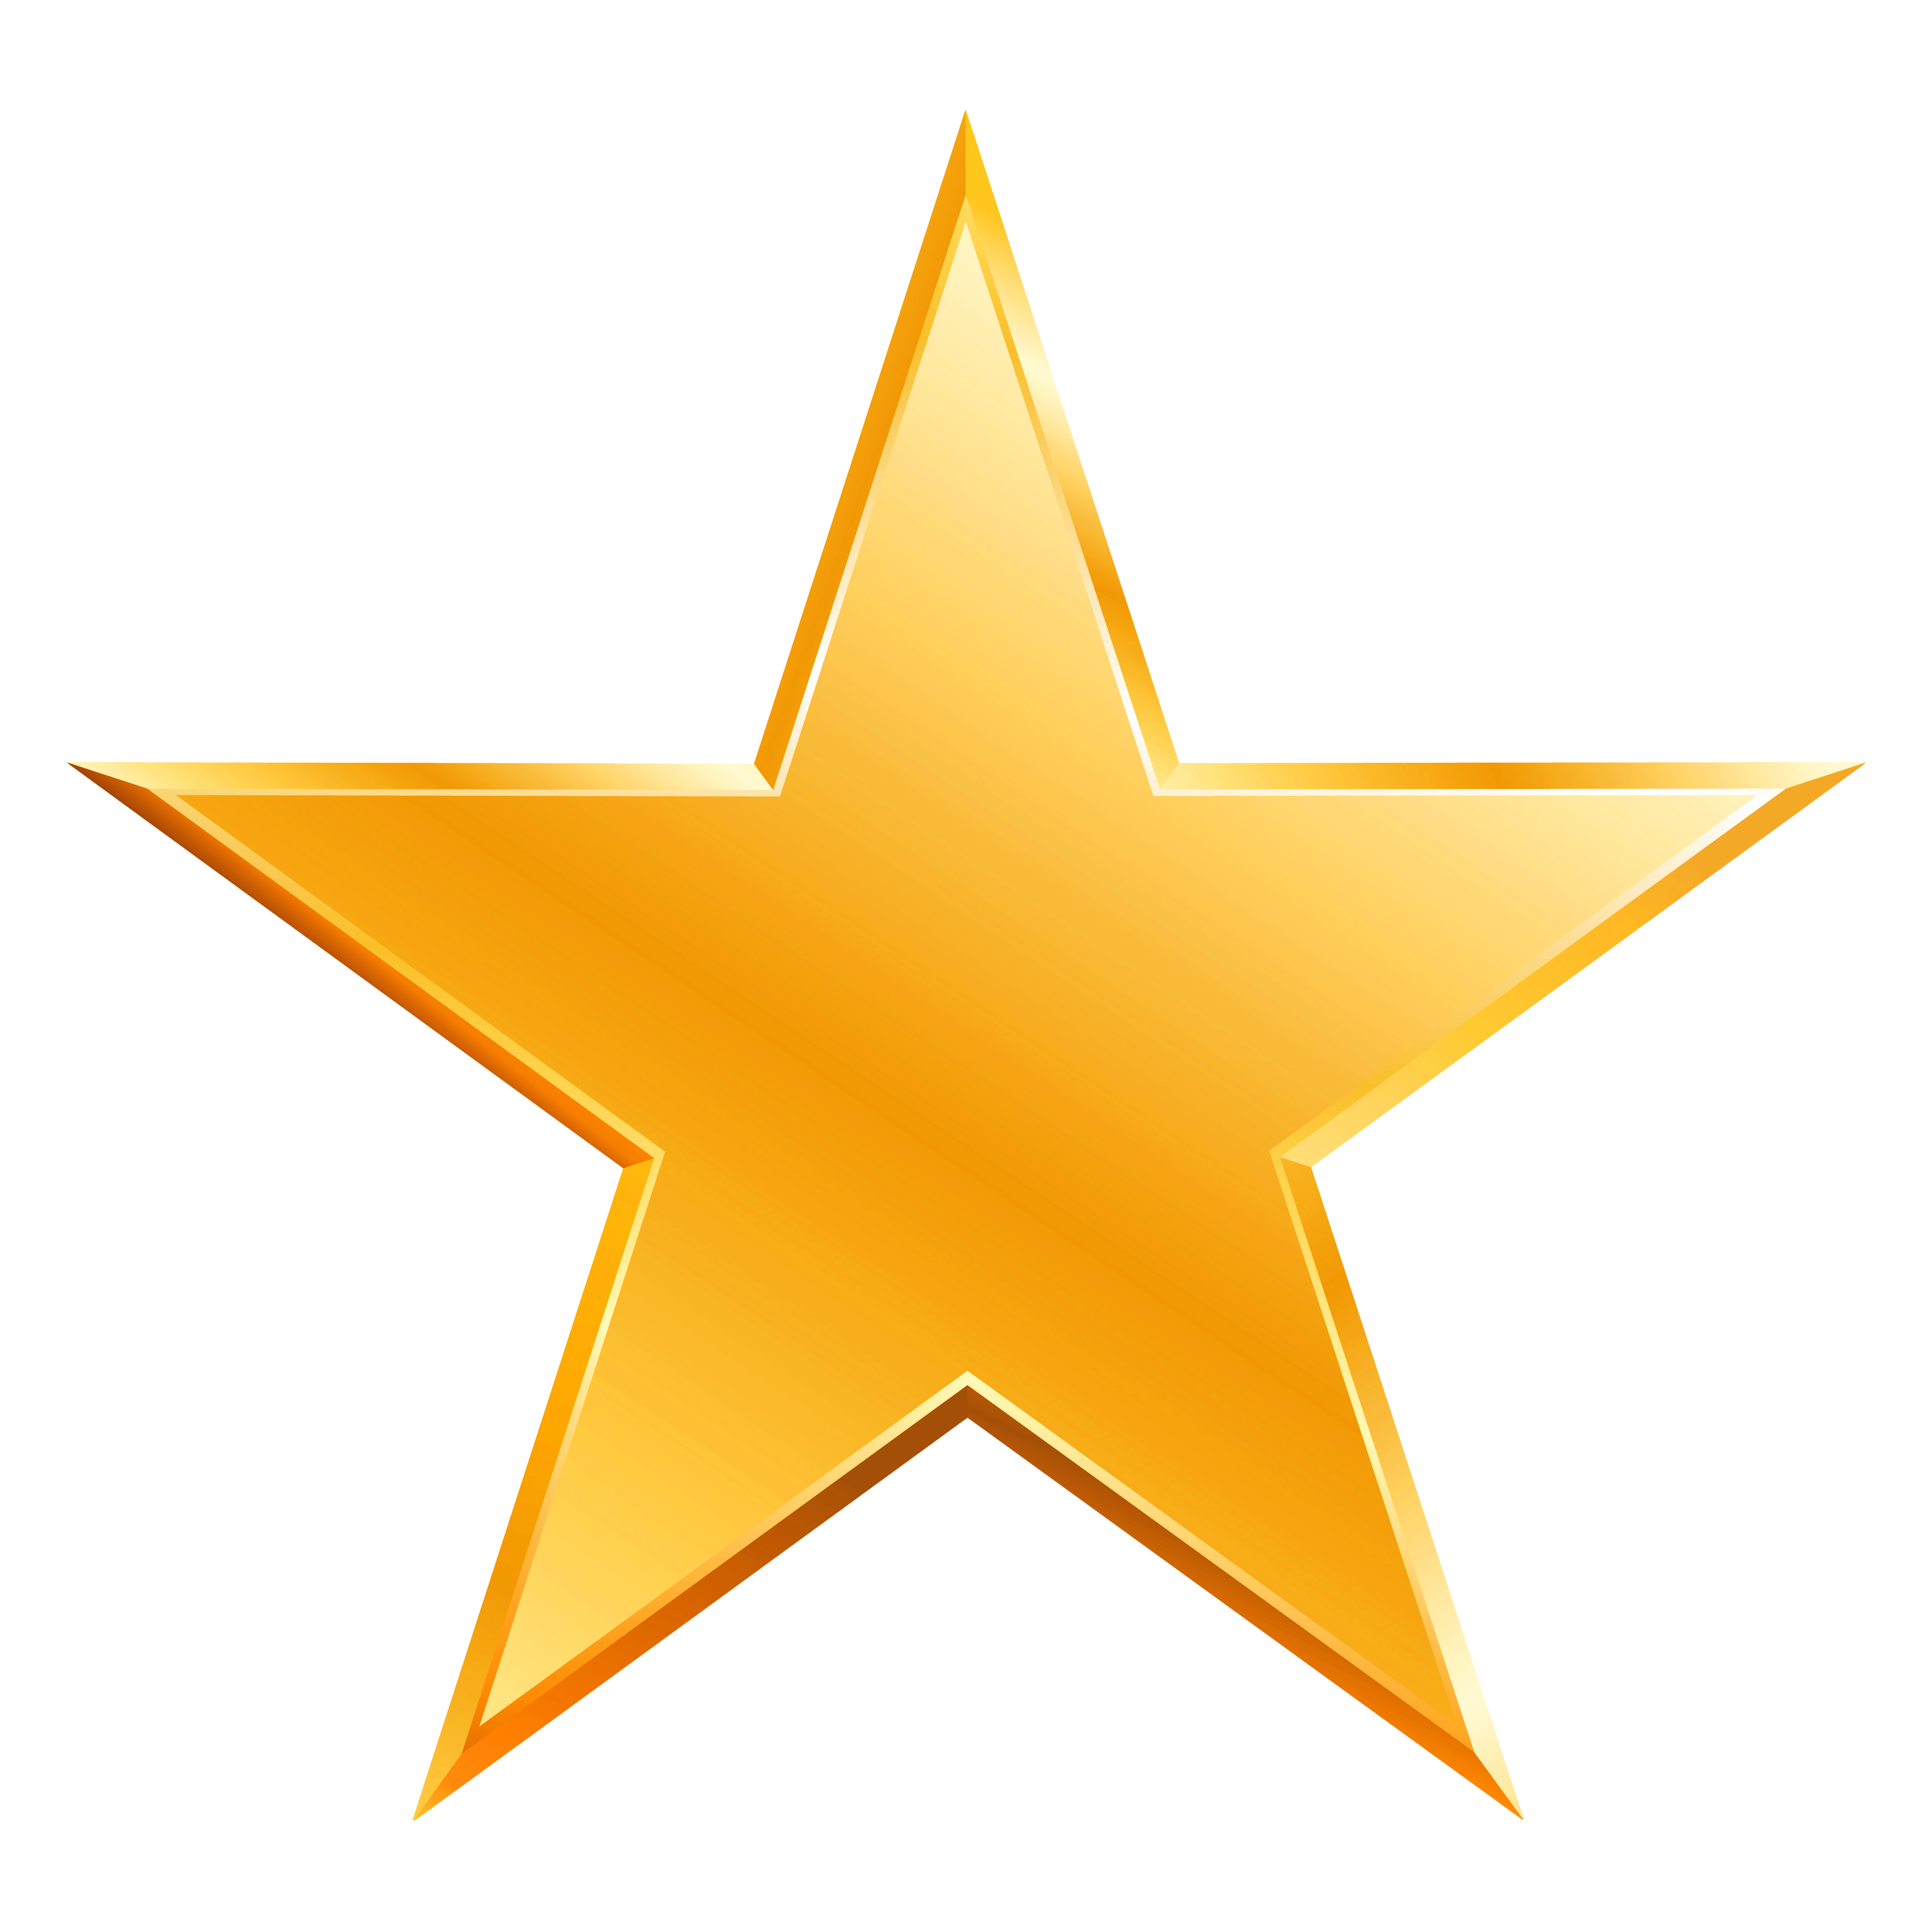 Star logo - Modern Logo Design on Behance